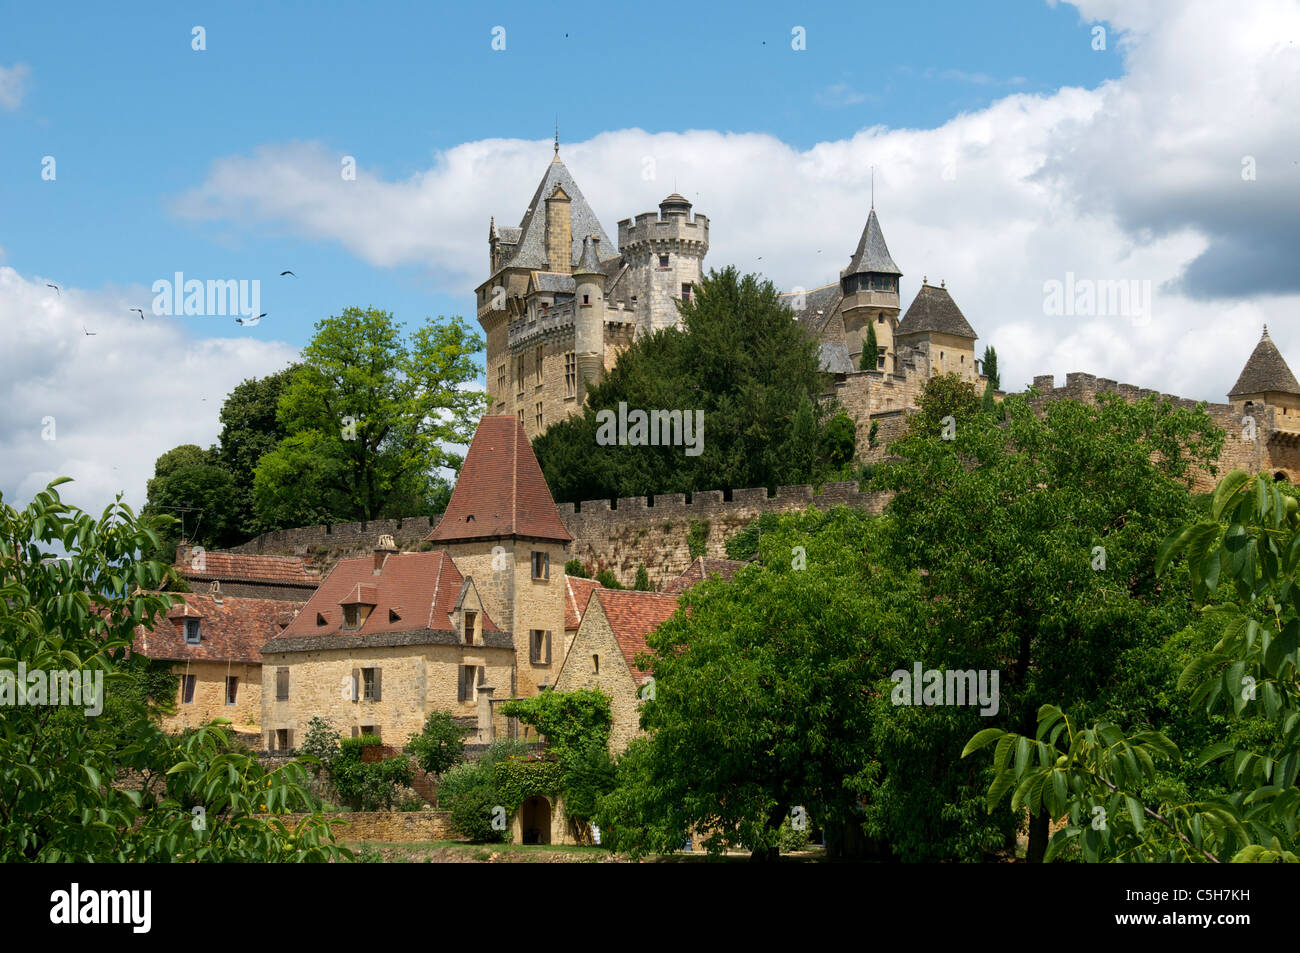 Chateau de Montford and village Aquitaine France Stock Photo